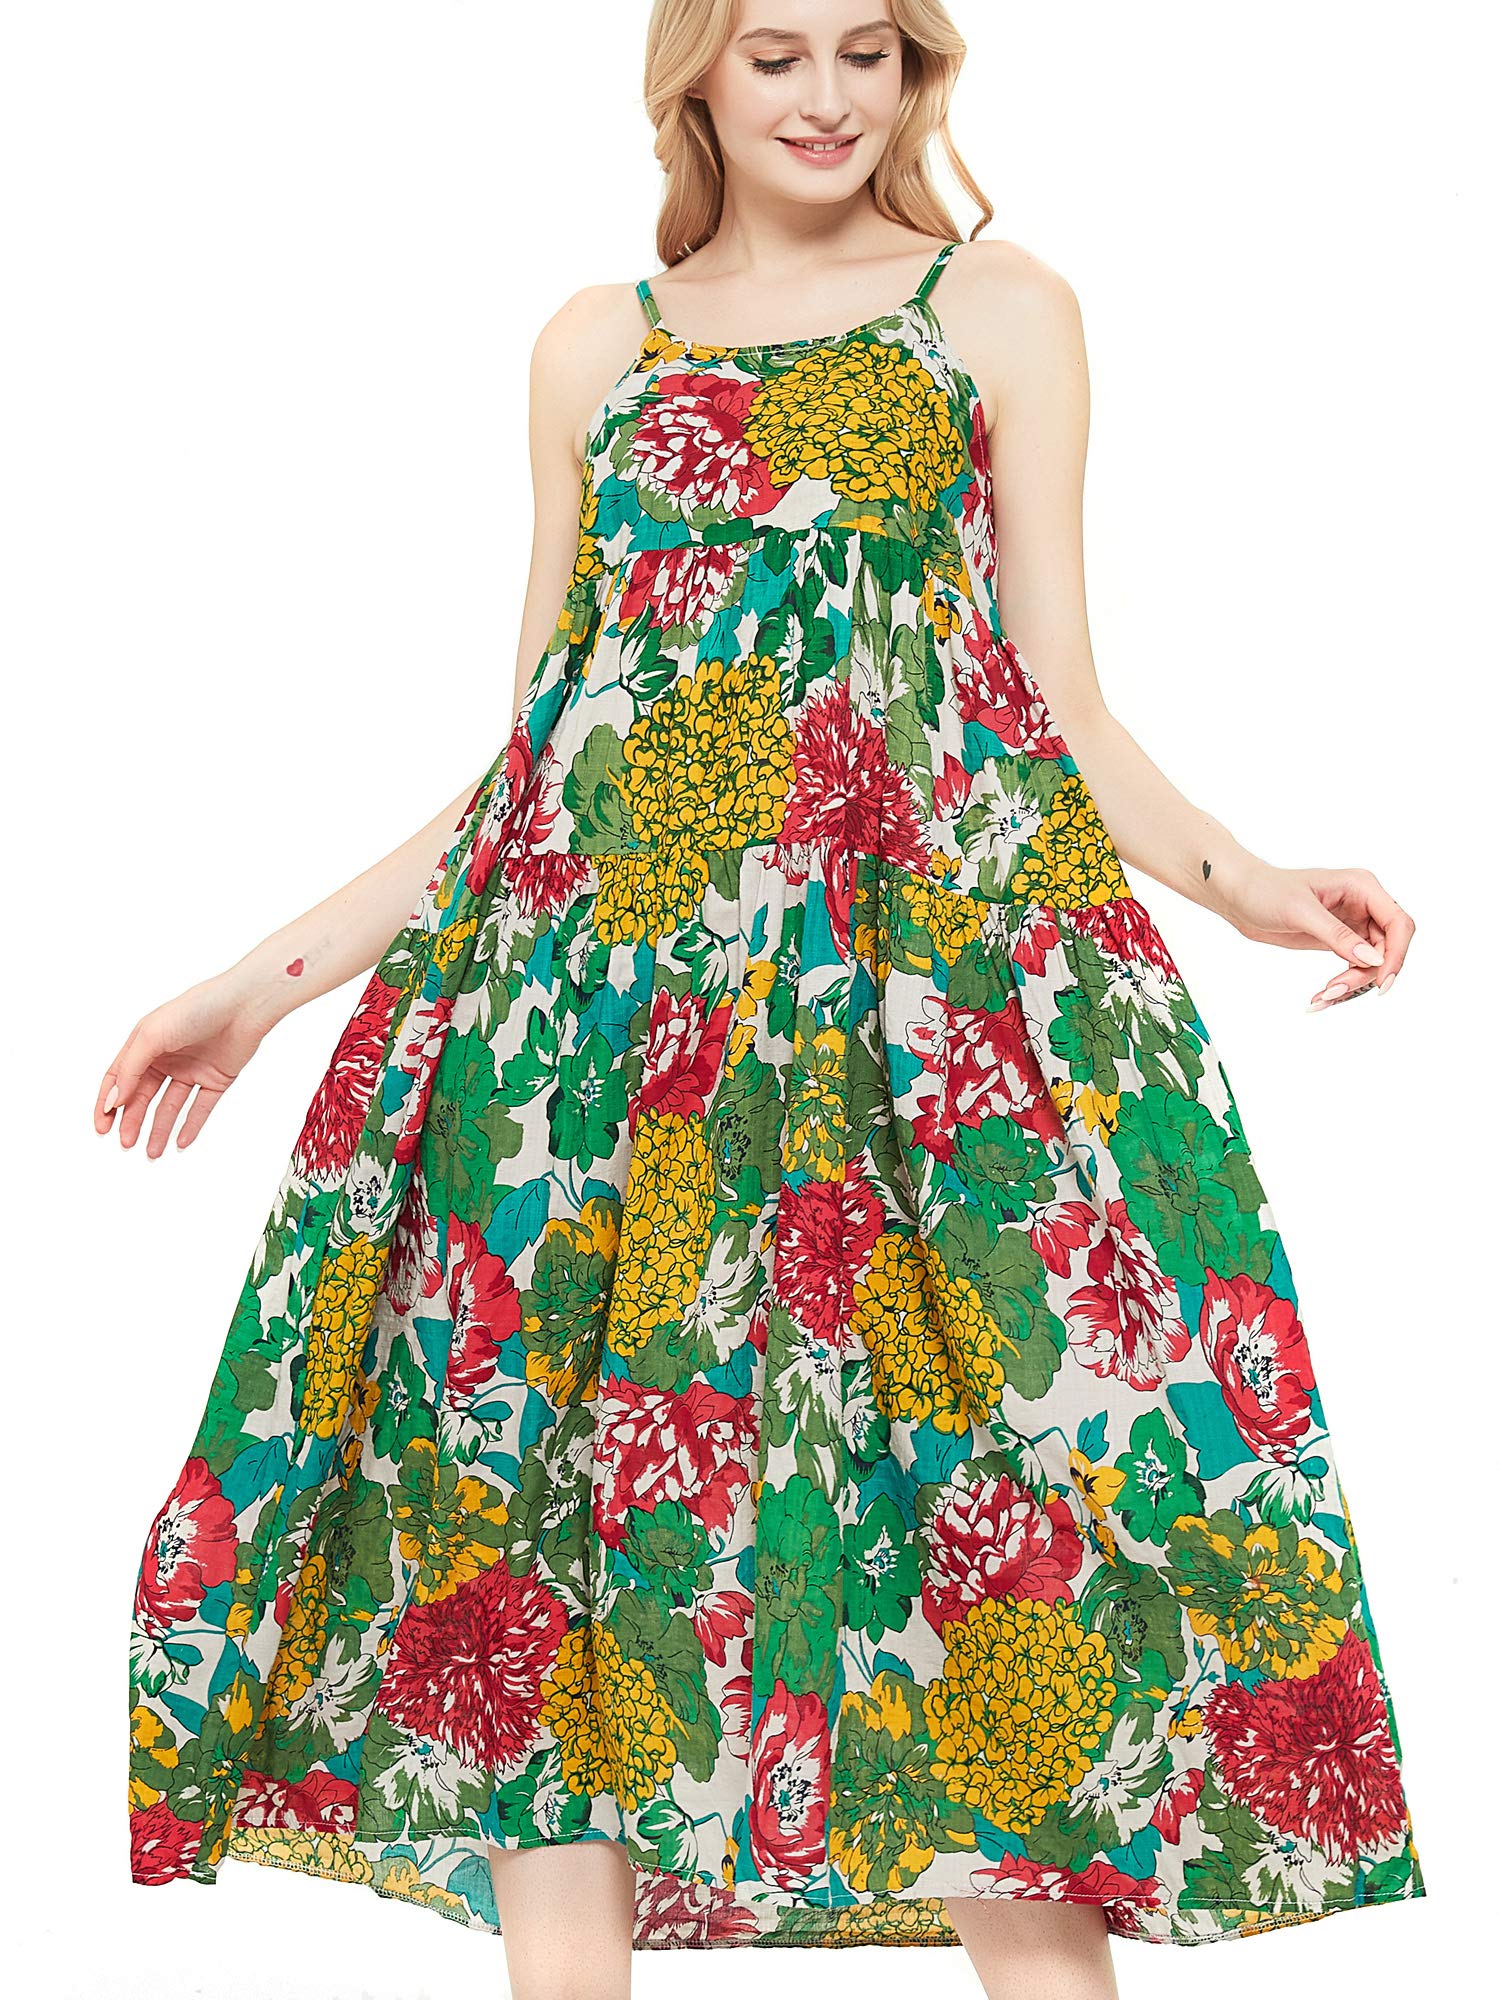 UIMLK + Summer Tiered House Dress